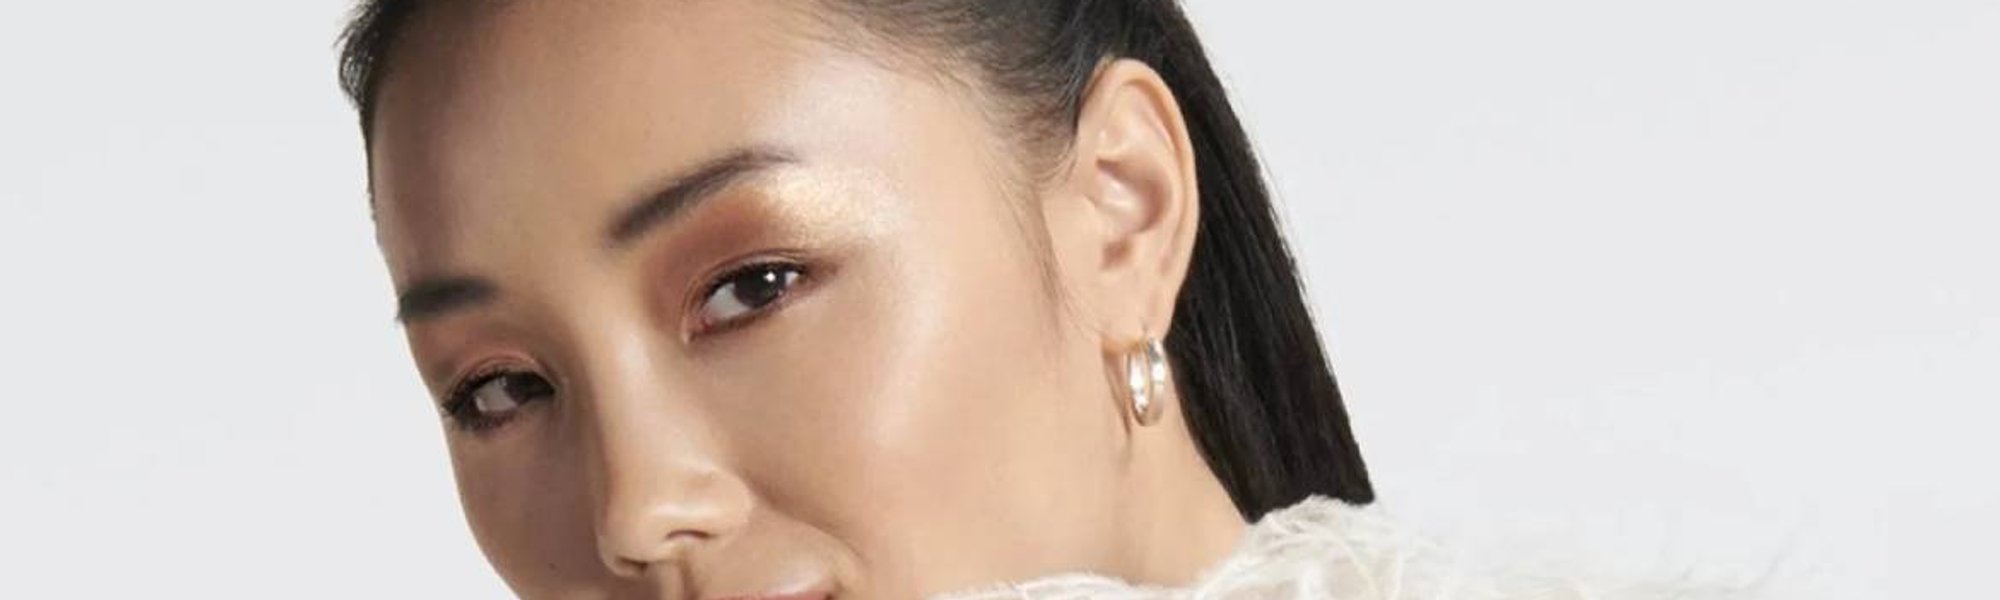 Cómo conseguir la piel con efecto glass skin | L’Oréal Paris